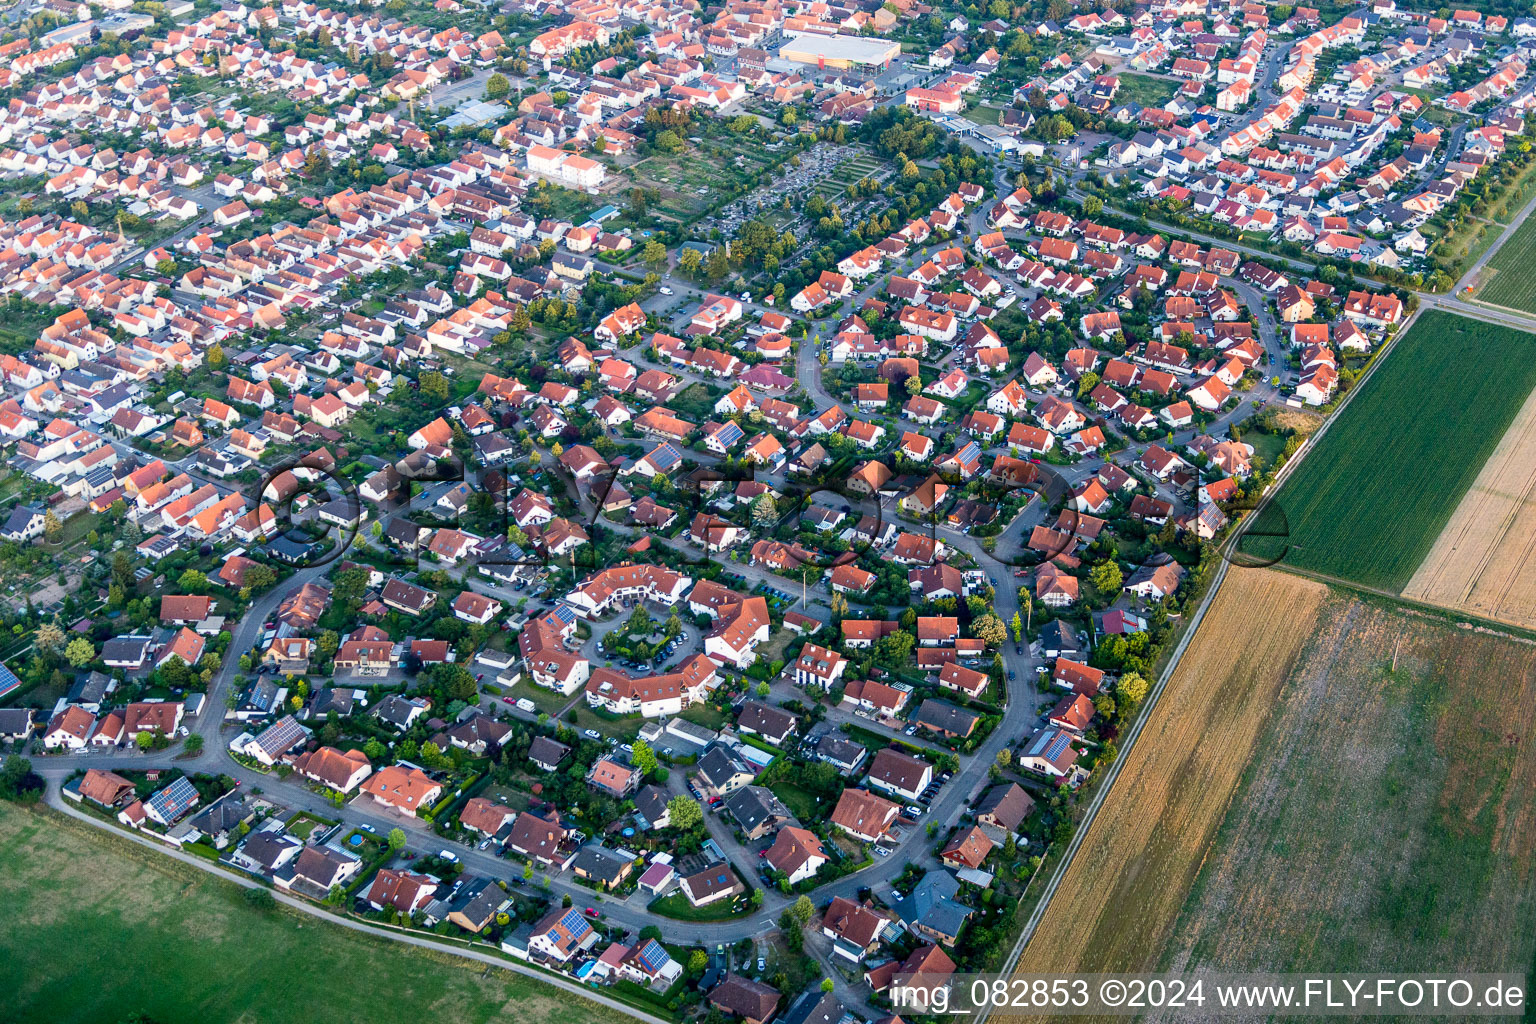 Vue aérienne de Quartier Queichtalring dans l'aire urbaine à Offenbach an der Queich dans le département Rhénanie-Palatinat, Allemagne